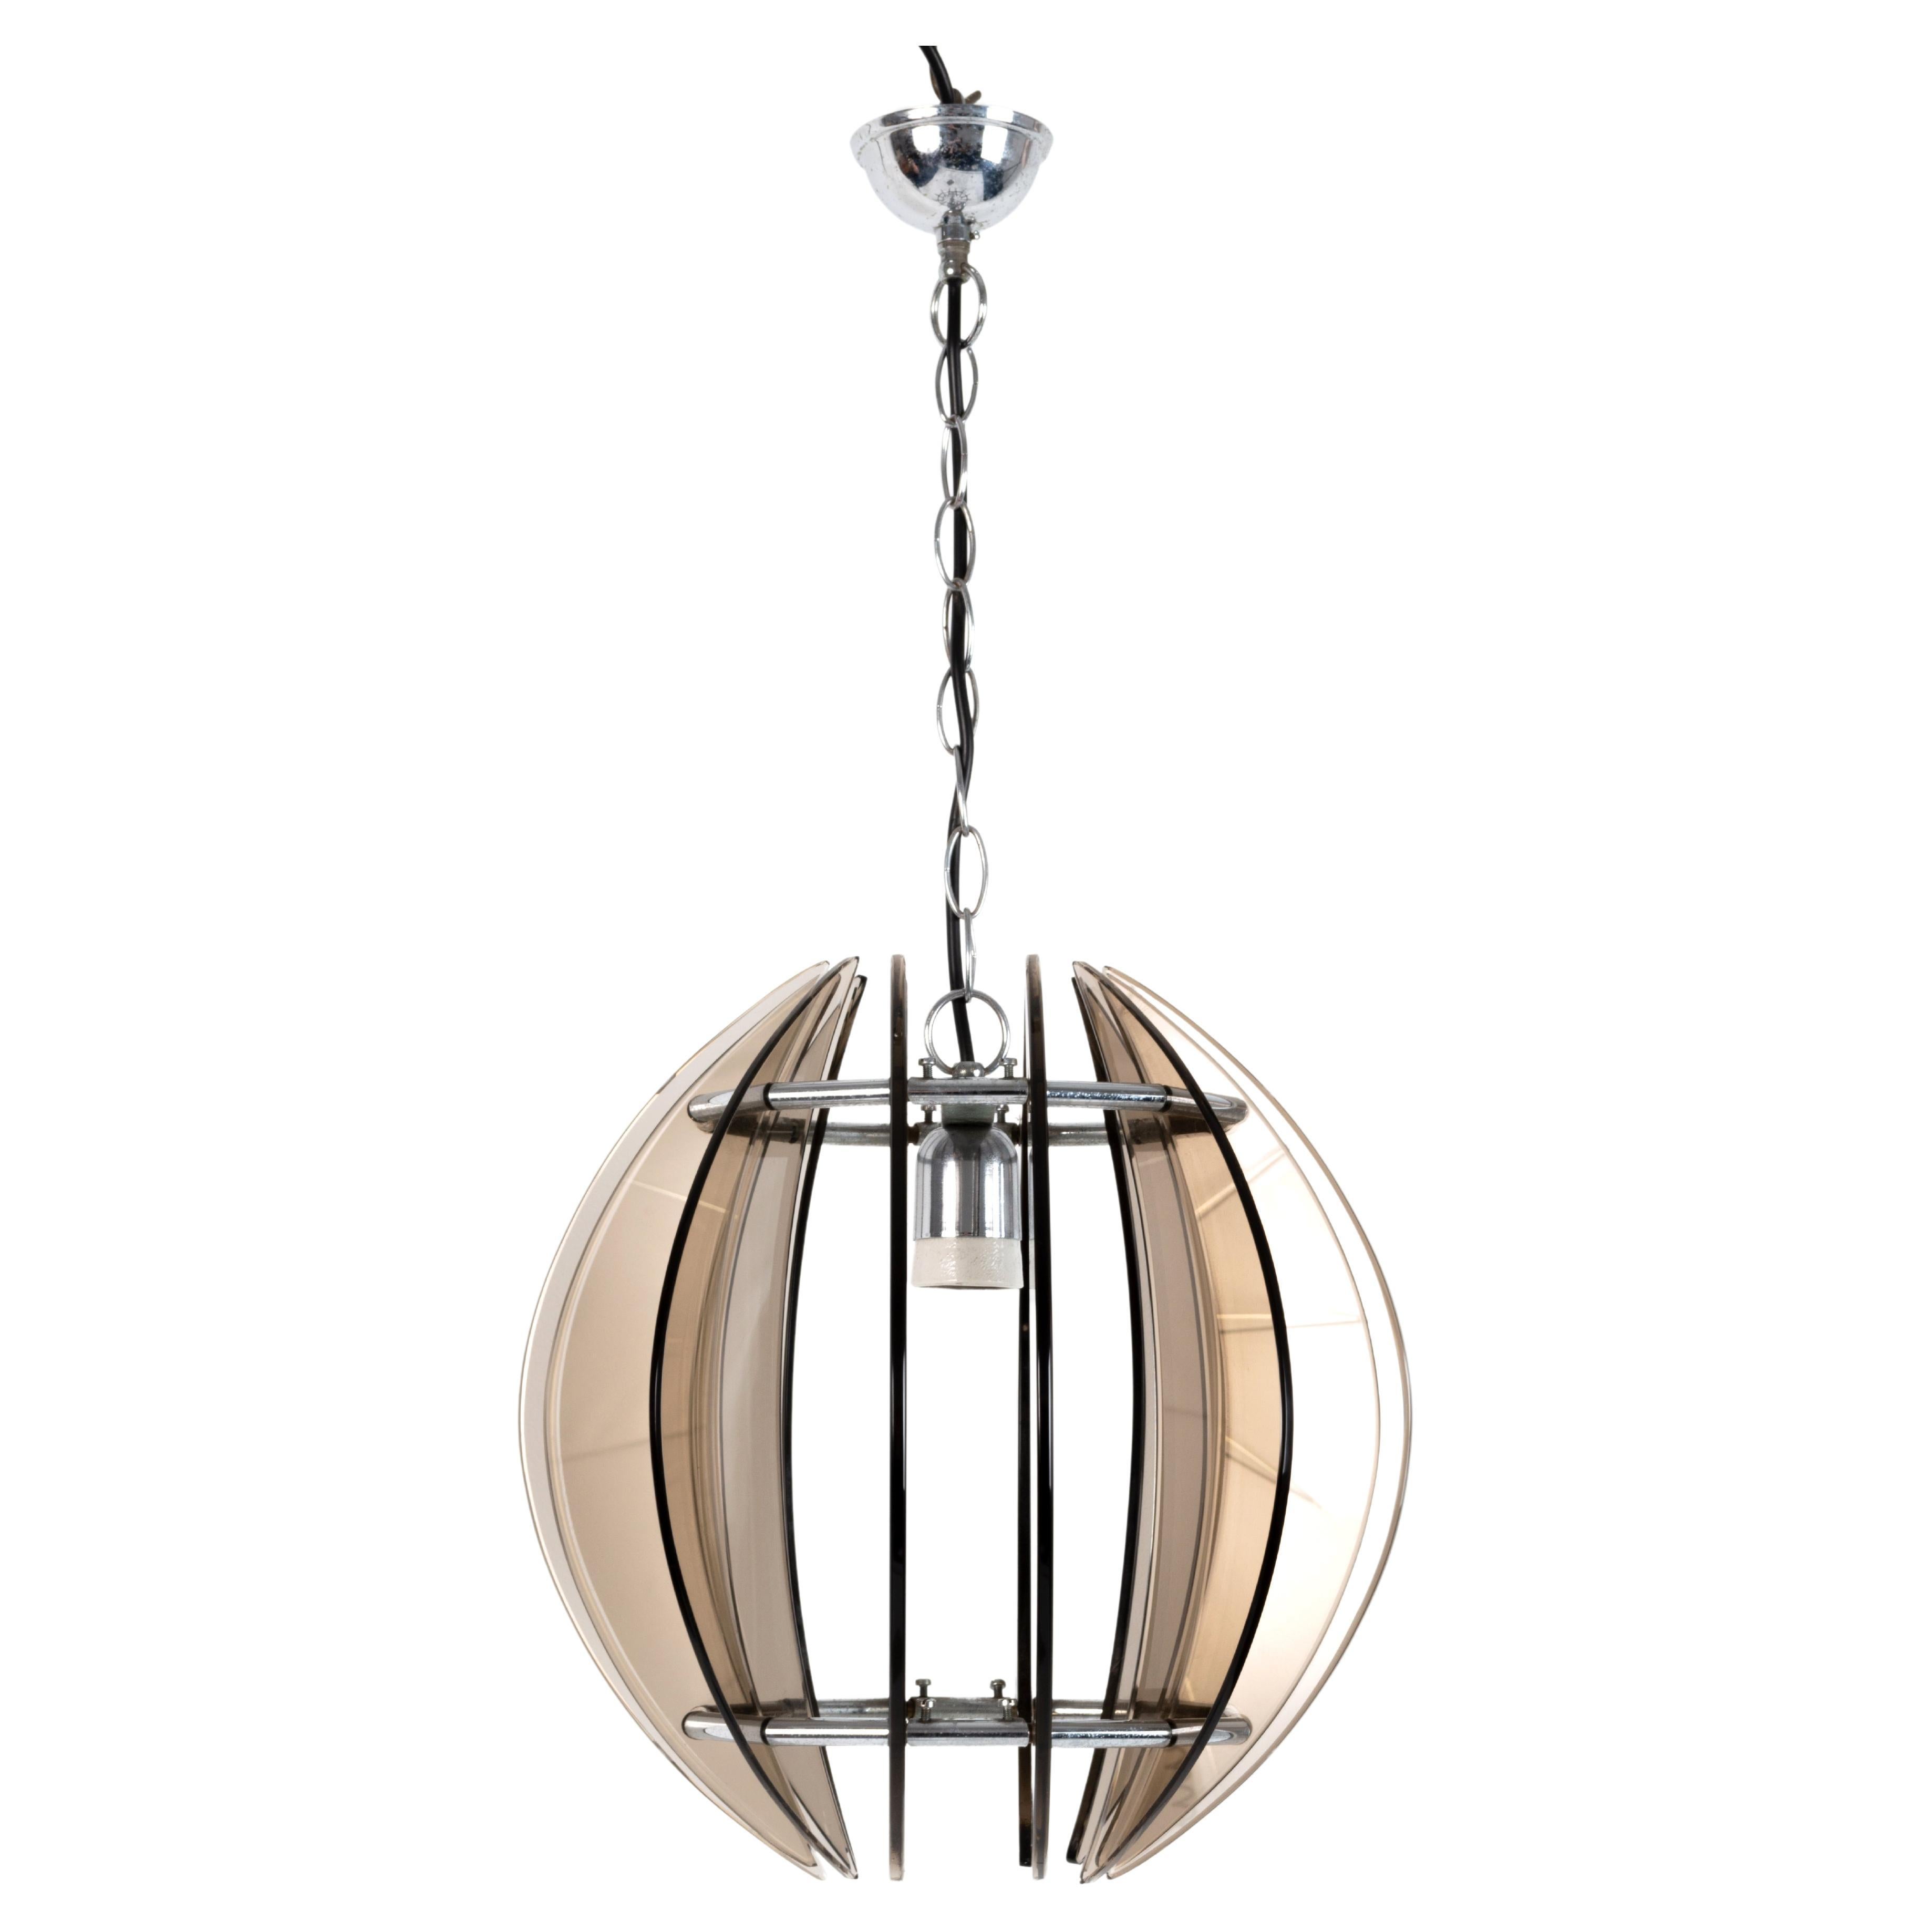 Lampe à suspension italienne Fontana Arte de style mi-siècle moderne en verre fumé